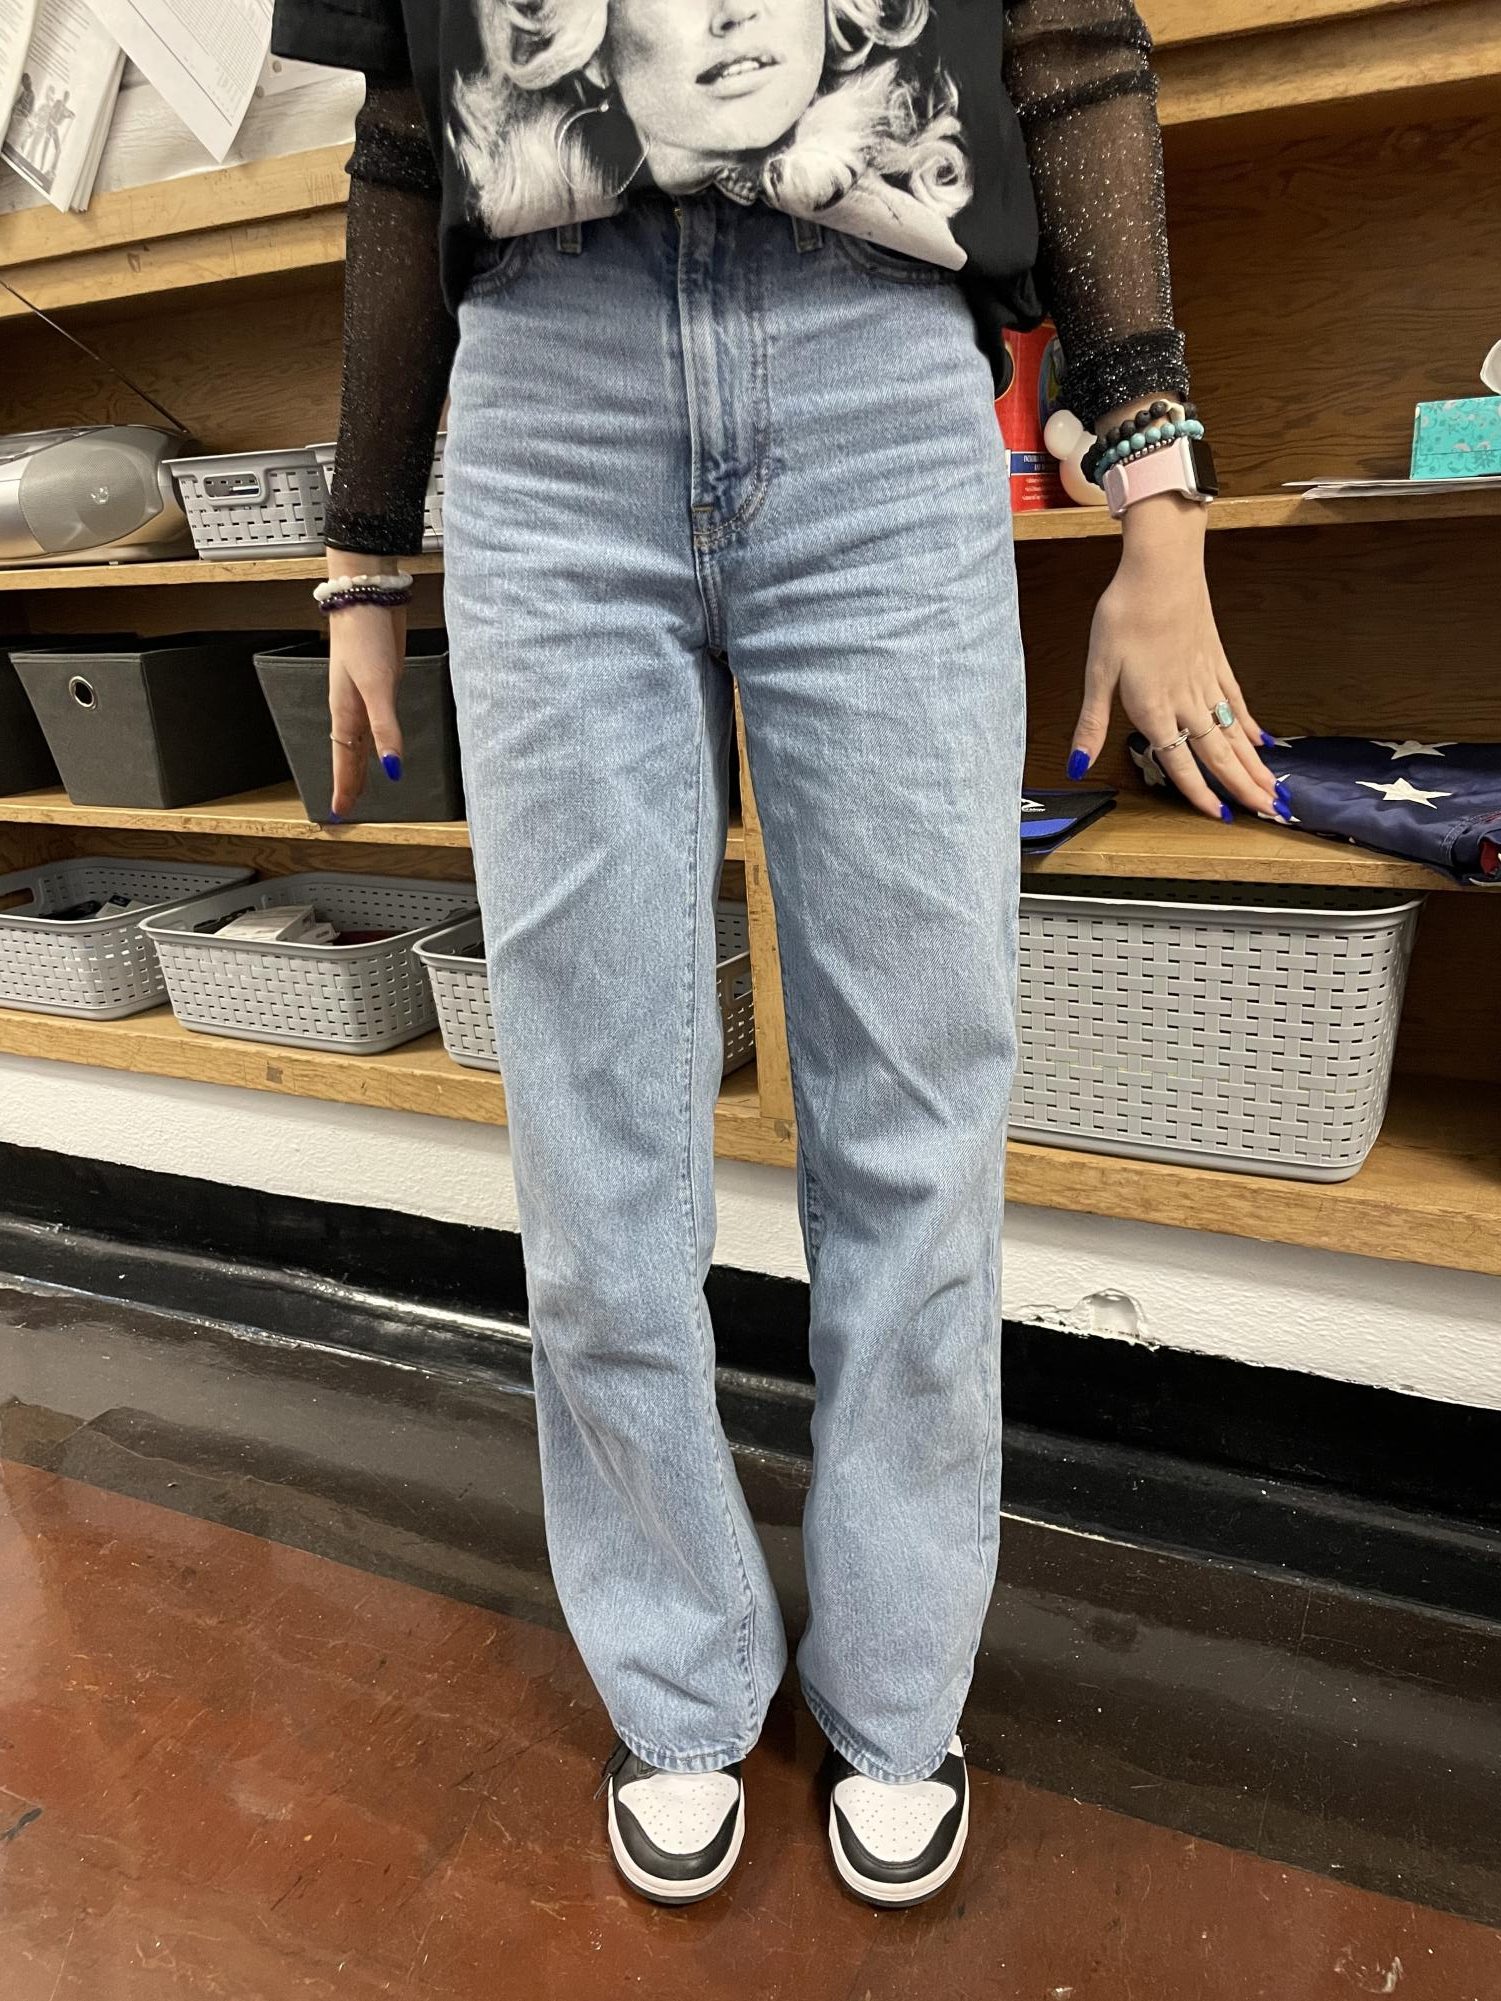 Morgan Knoblett wearing baggy, street-style jeans. 